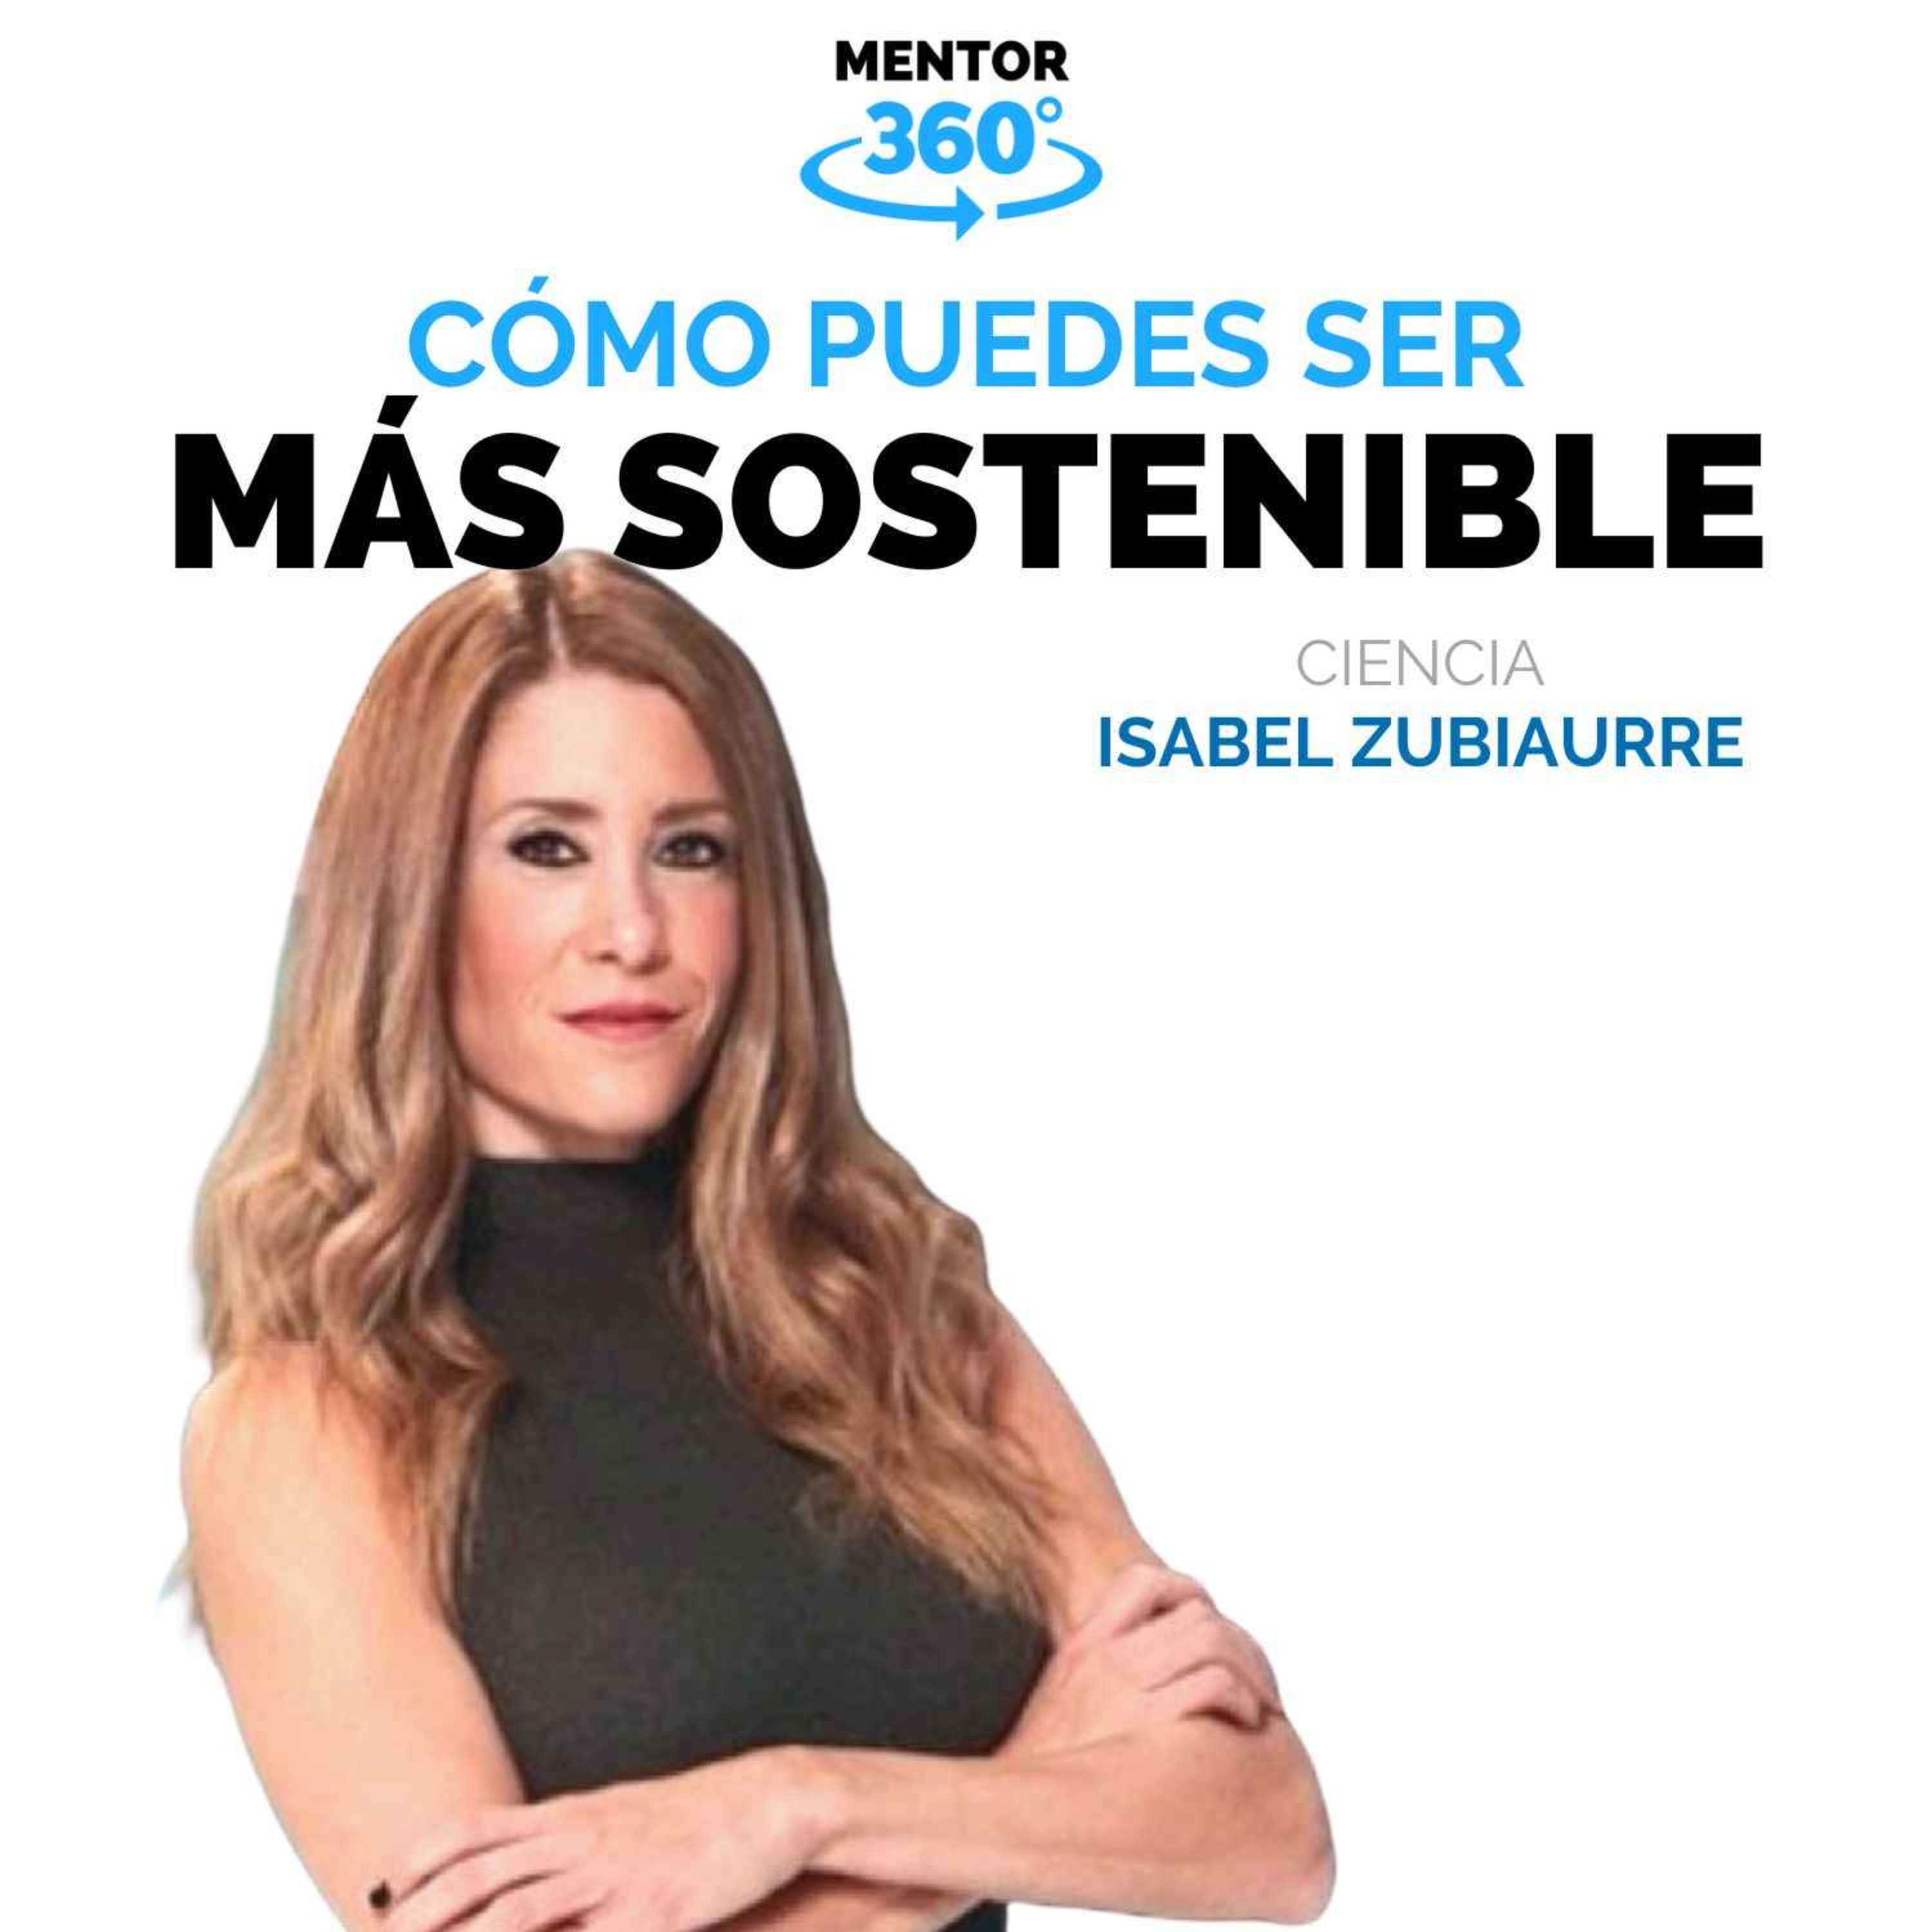 Cómo Puedes Ser Sostenible - Isabel Zubiaurre - Meteorología - MENTOR360